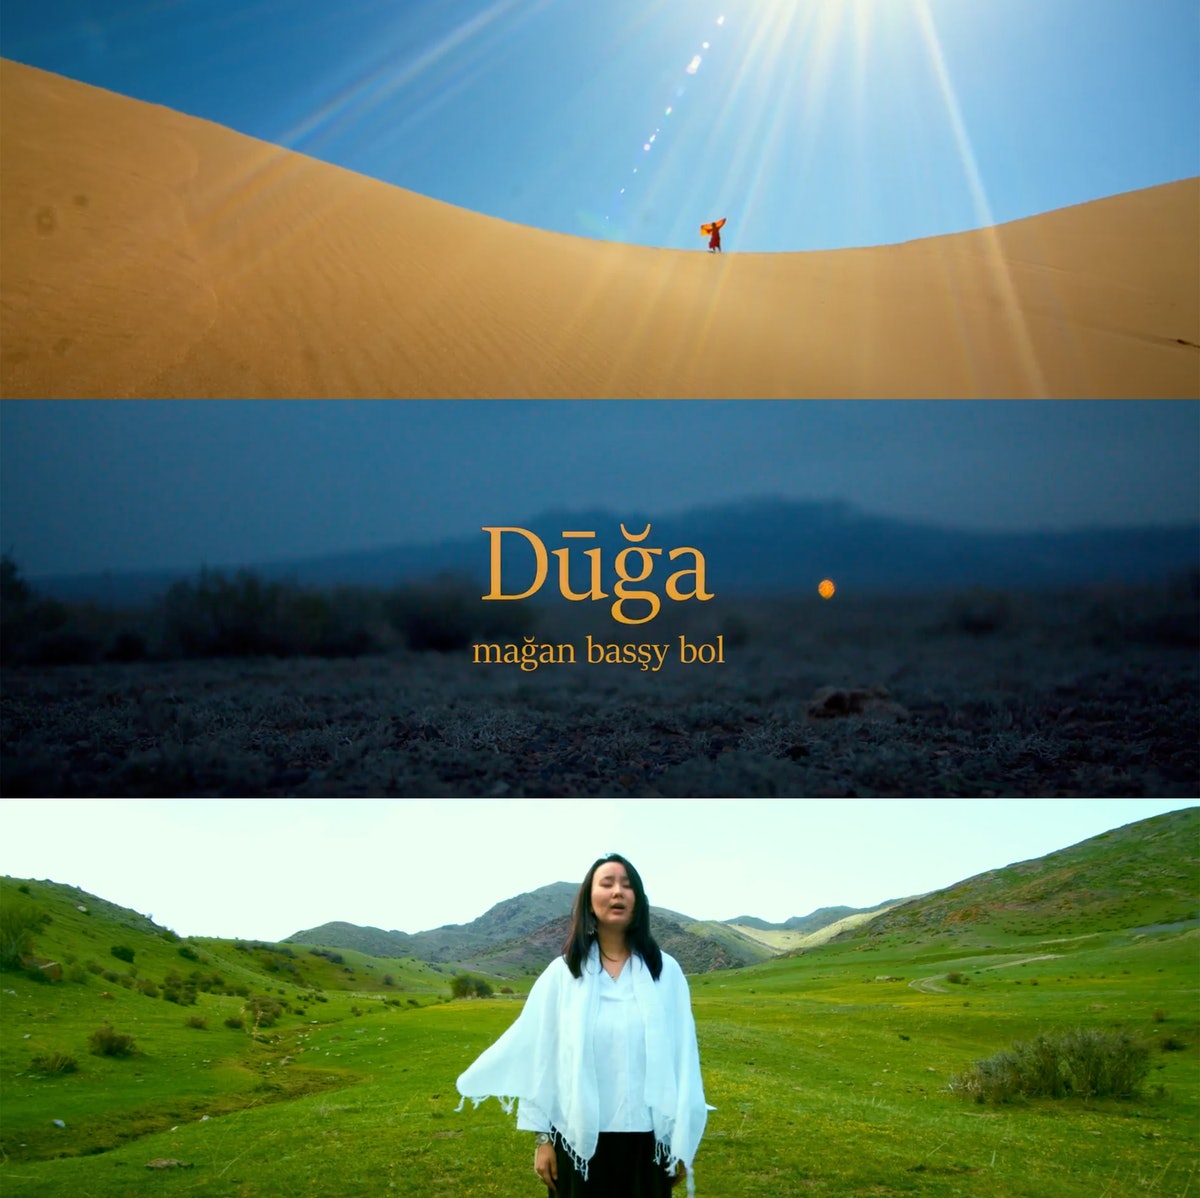 Cette vidéo, qui sera diffusée en ouverture des conférences au Kazakhstan, présente une prière bahá’íe chantée en kazakh, alors que le chanteur parcourt divers environnements et paysages.